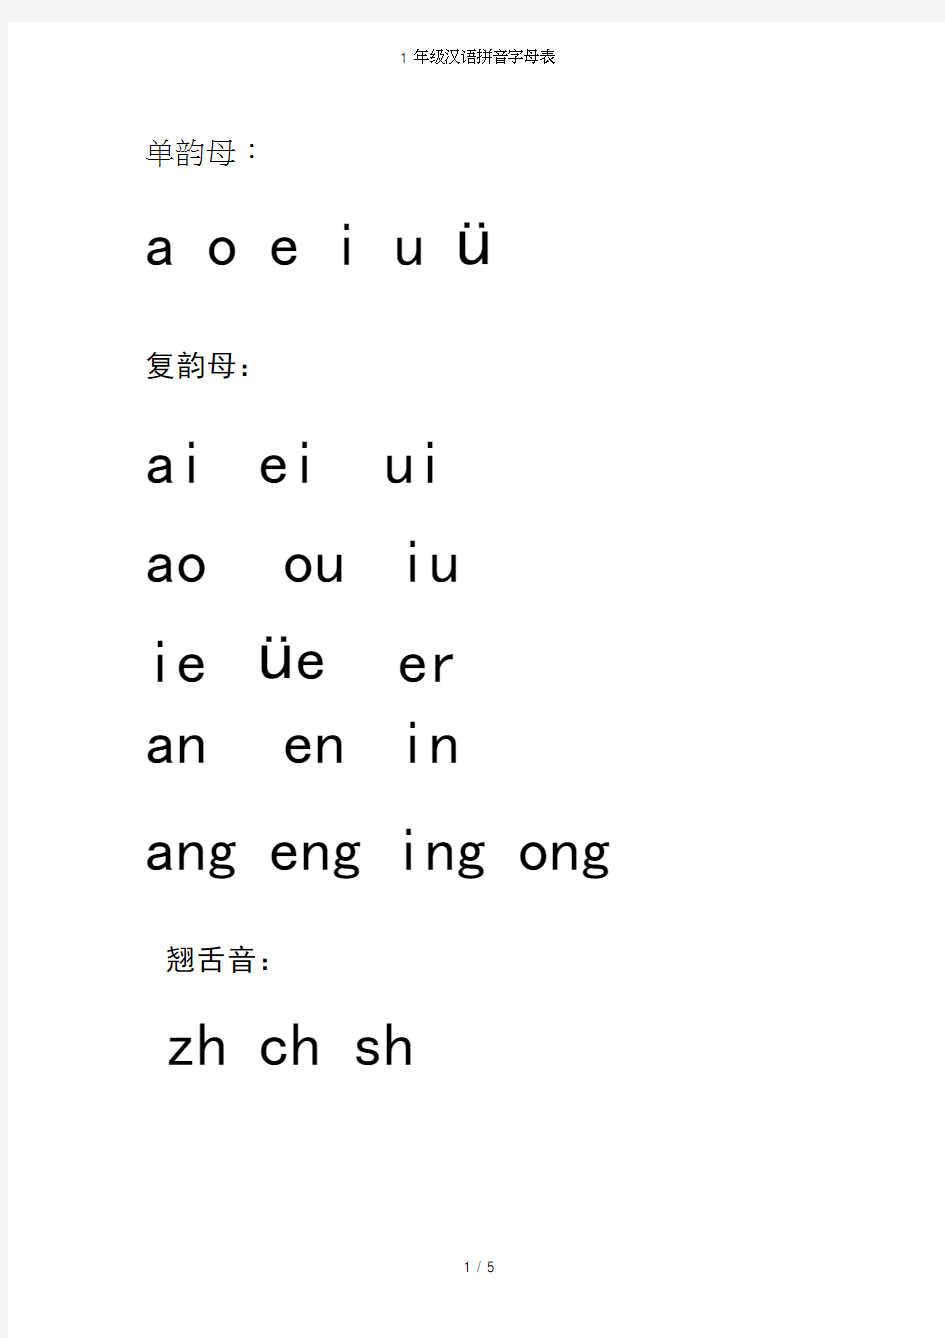 (完整版)1年级汉语拼音字母表